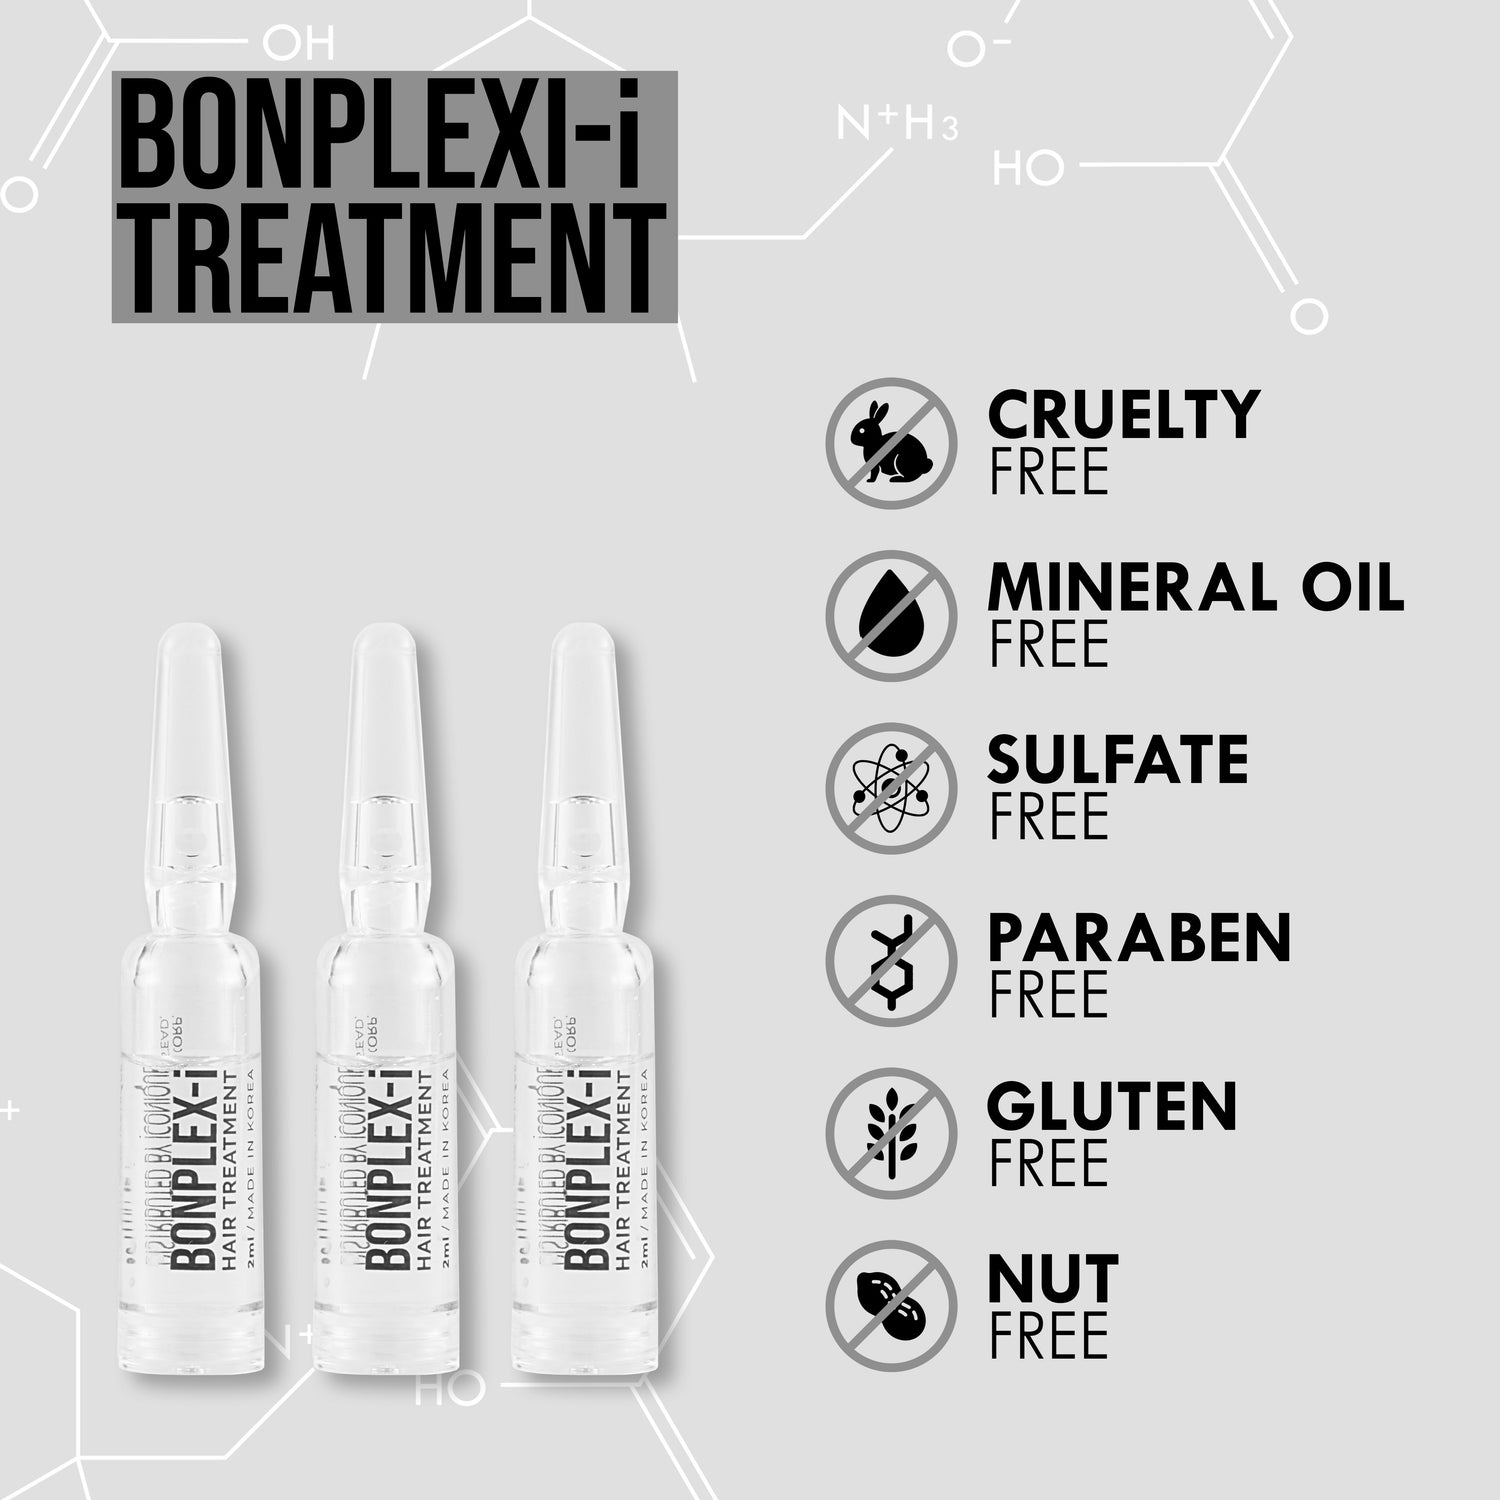 Bonplex-i ampoule treatment ingredients free